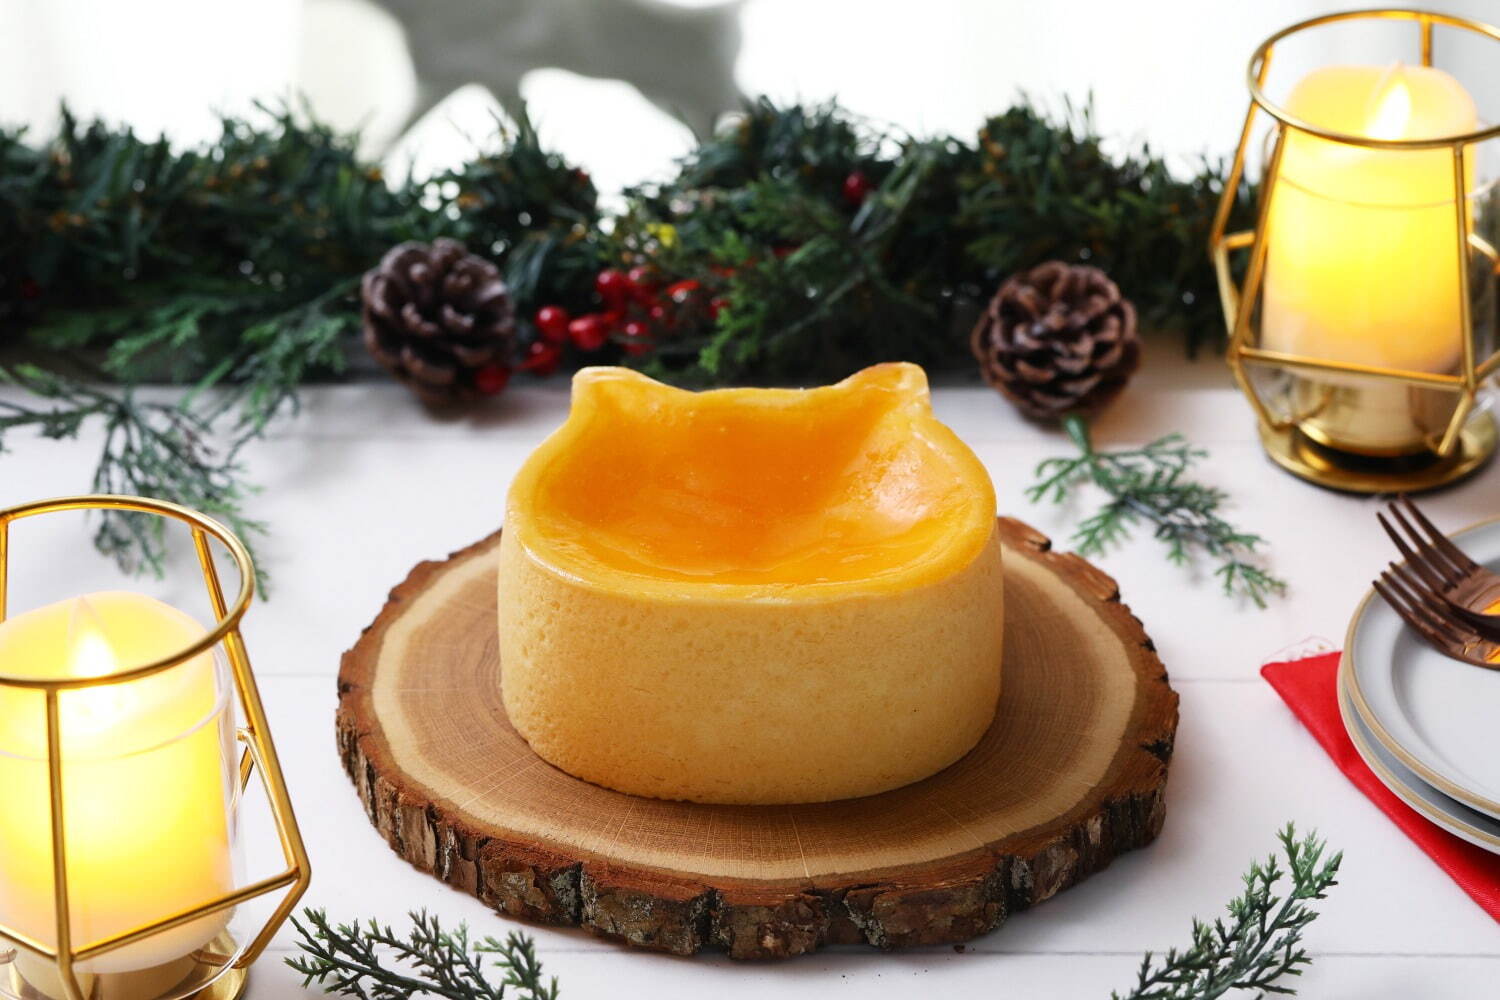 ねこねこチーズケーキ21年クリスマス、雪のようなクリームのせ2層仕立ての“ネコ型”チーズケーキ｜写真2